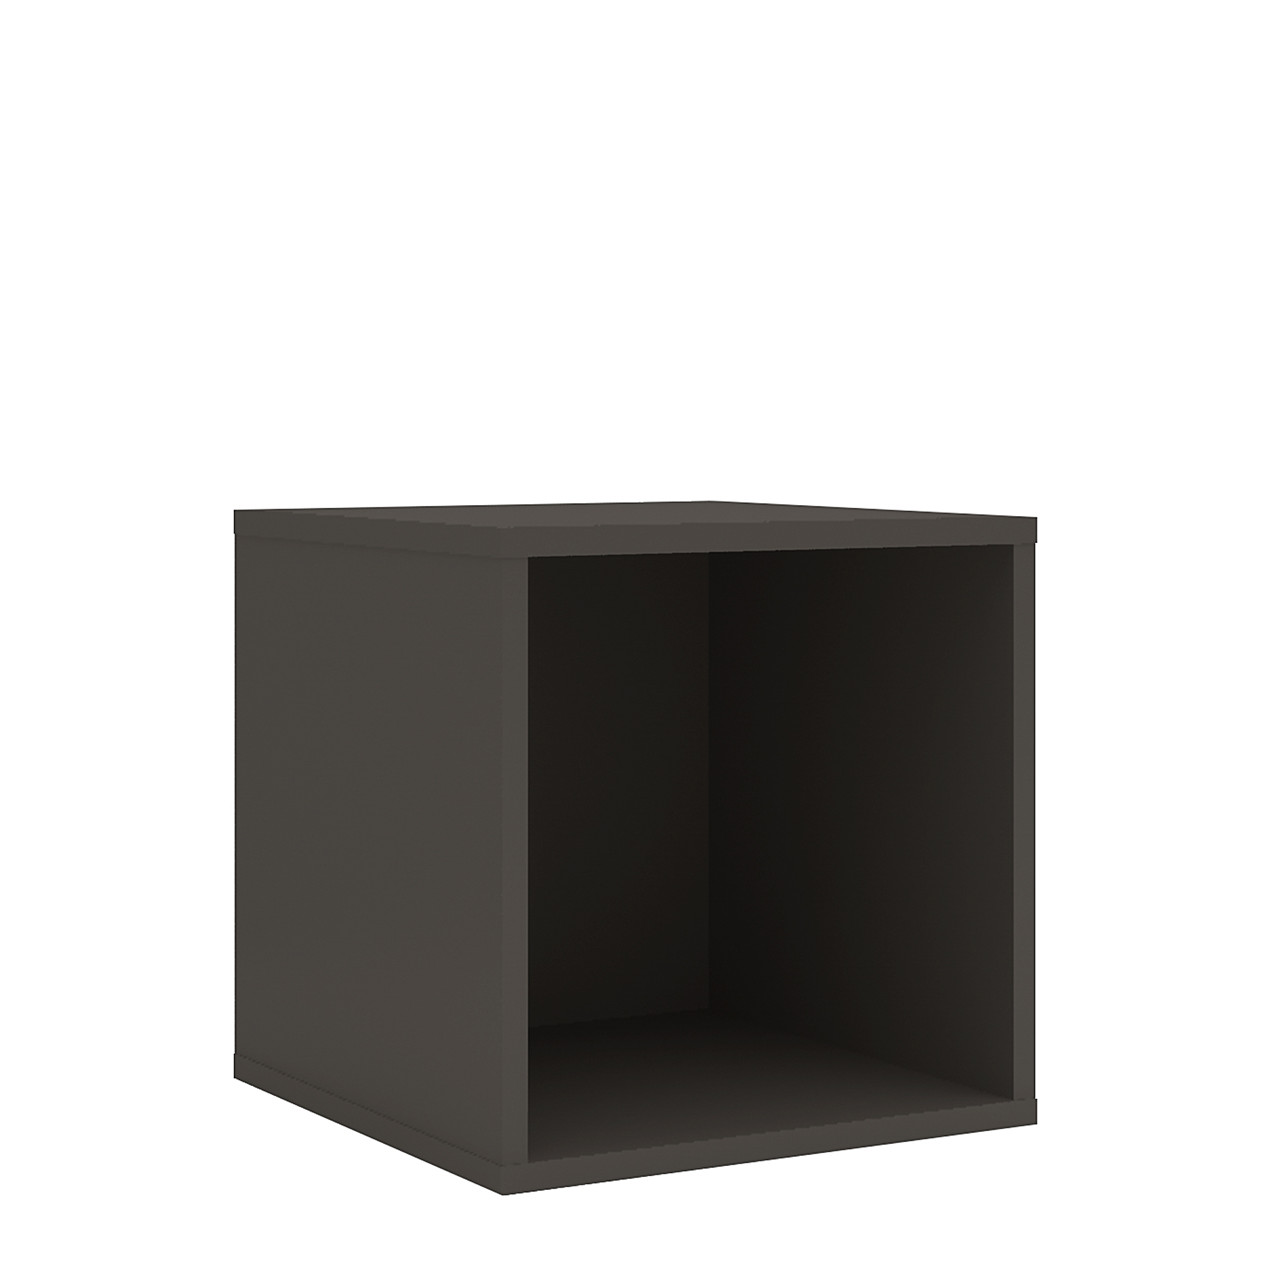 Furniture x Sinnerup BUILD IT UP modul a grå